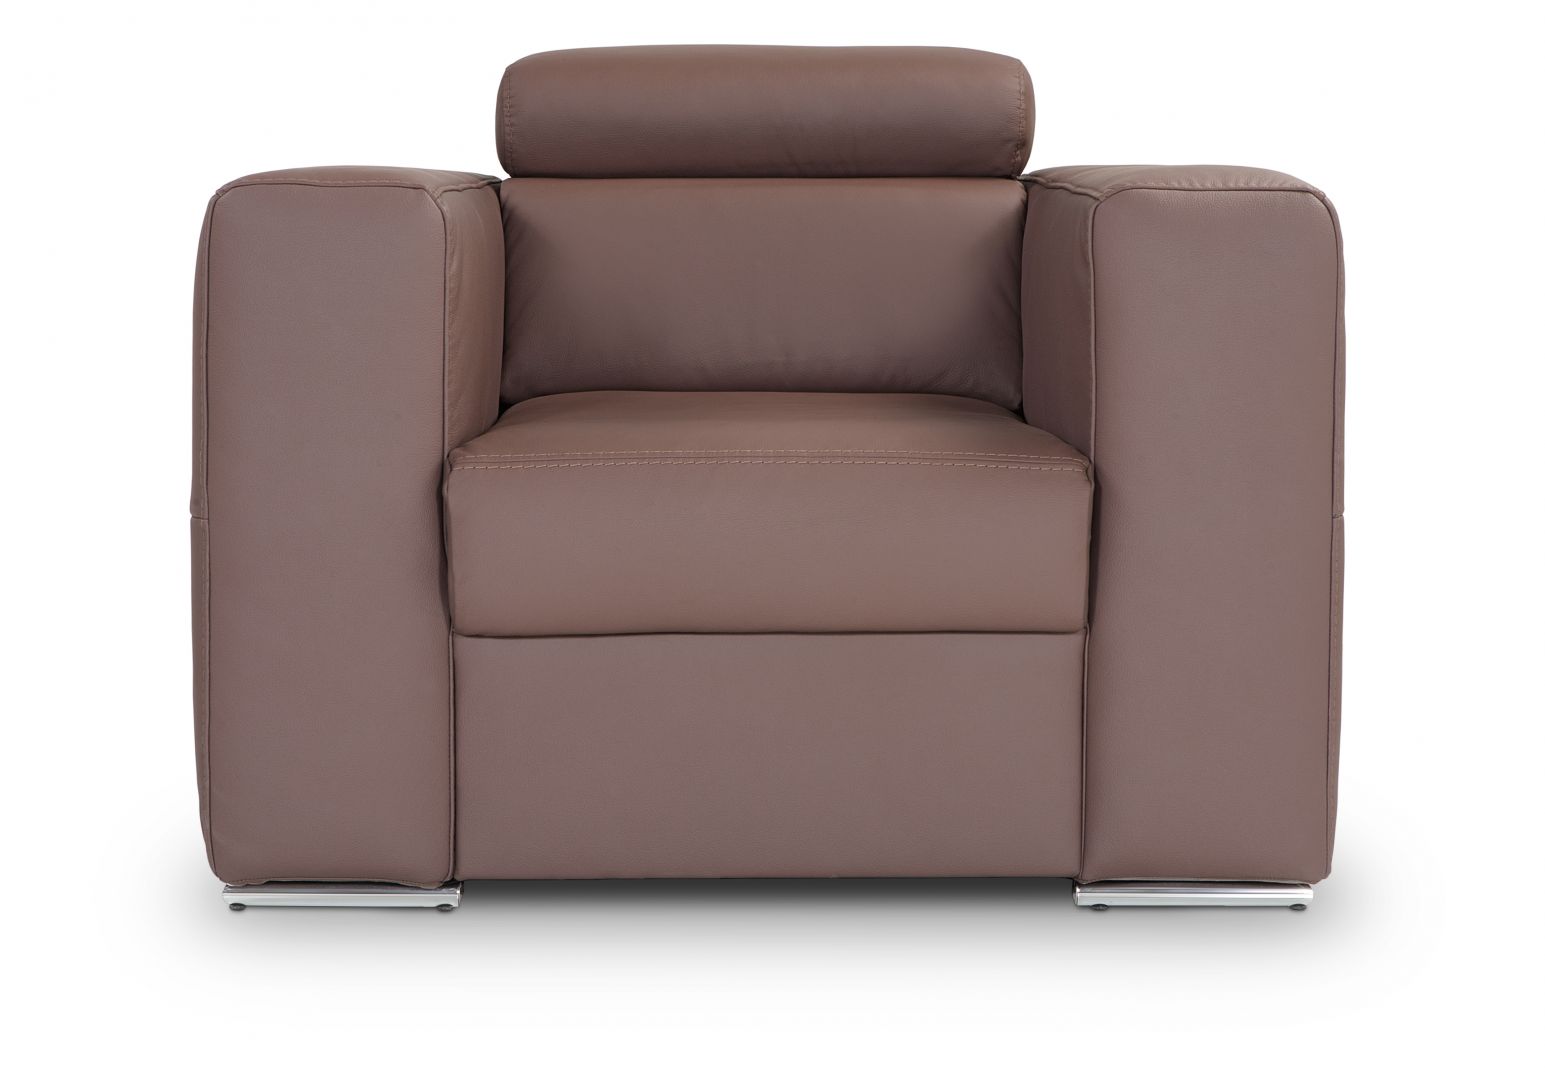 Modernistyczny i elegancki design fotele Enzo wprowadza do wnętrza ciepło i nadaje mu oryginalny charakter. Wysokiej jakości wypełnienie siedziska i oparć zapewnia użytkownikom maksymalny komfort wypoczynku. Fot. BRW